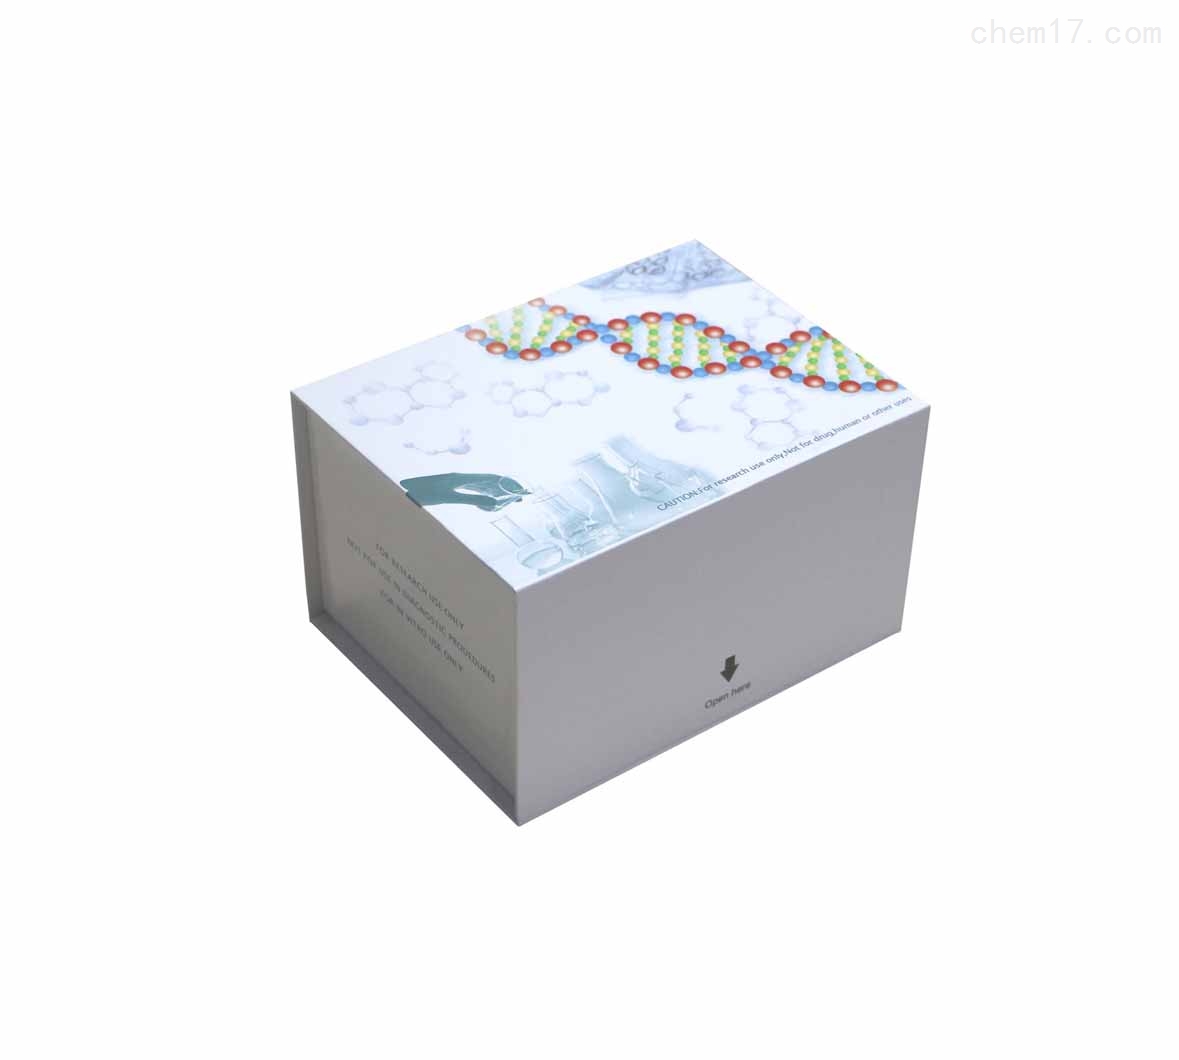 S100钙结合蛋白B(S100B)ELISA试剂盒检测目的